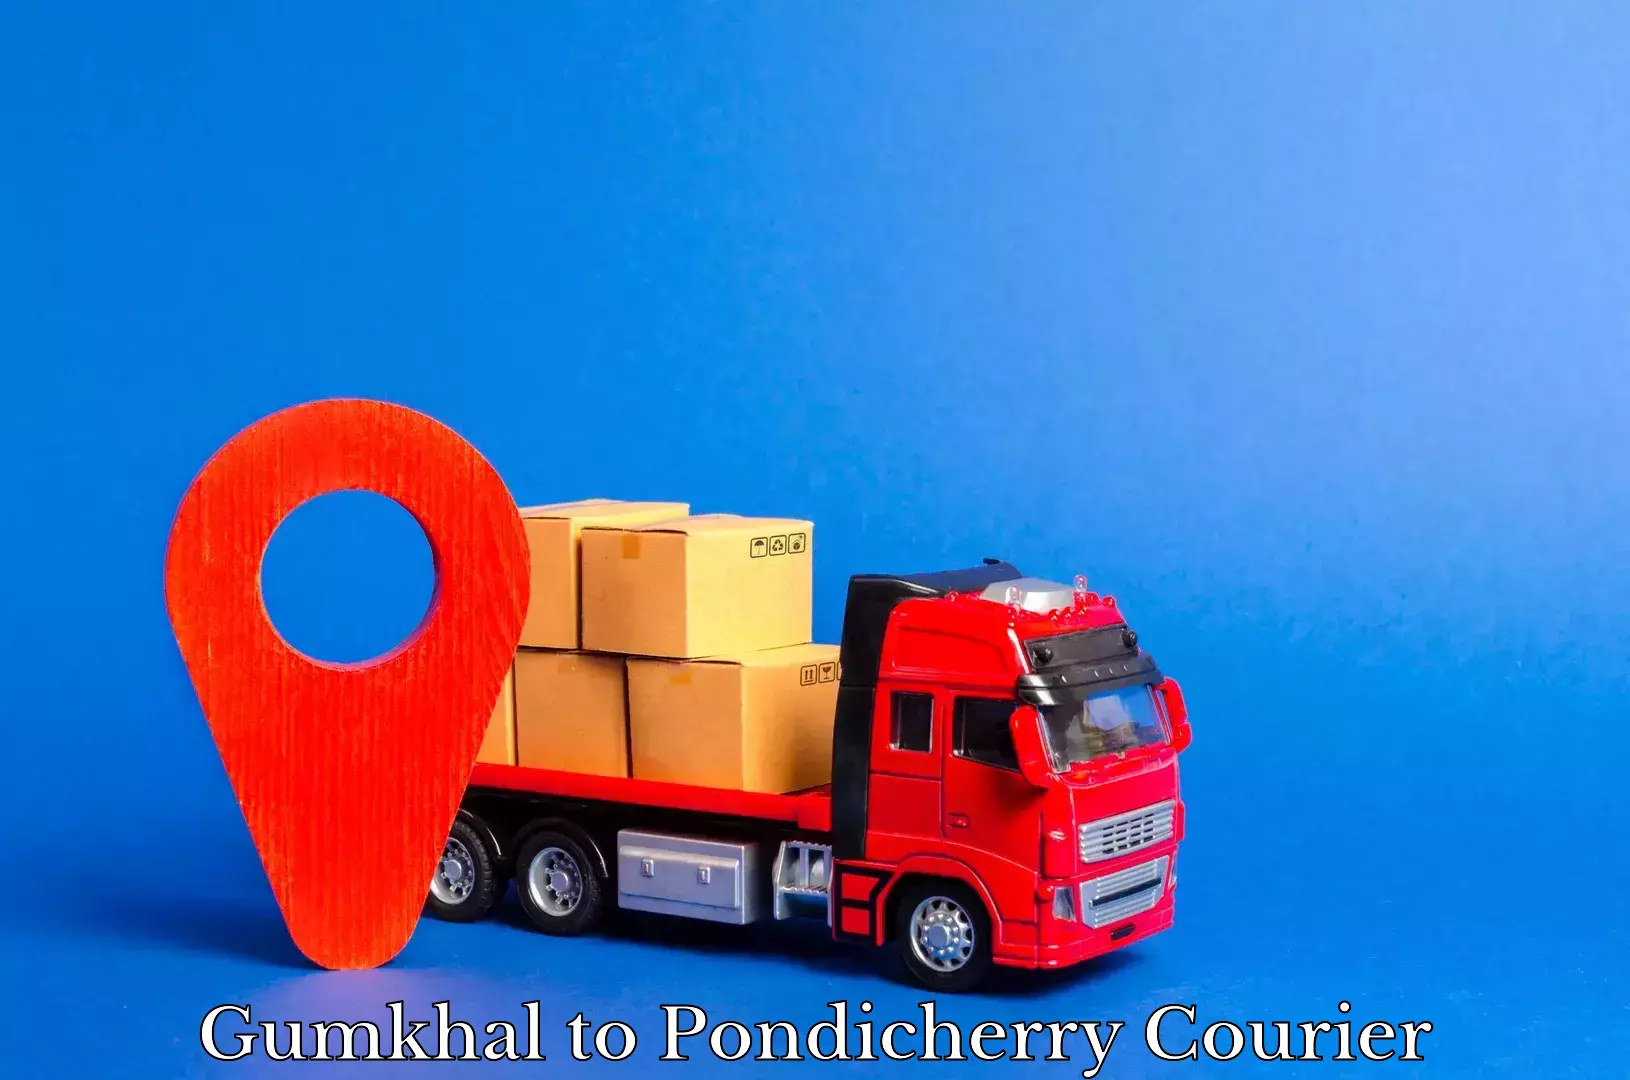 International courier networks Gumkhal to Pondicherry